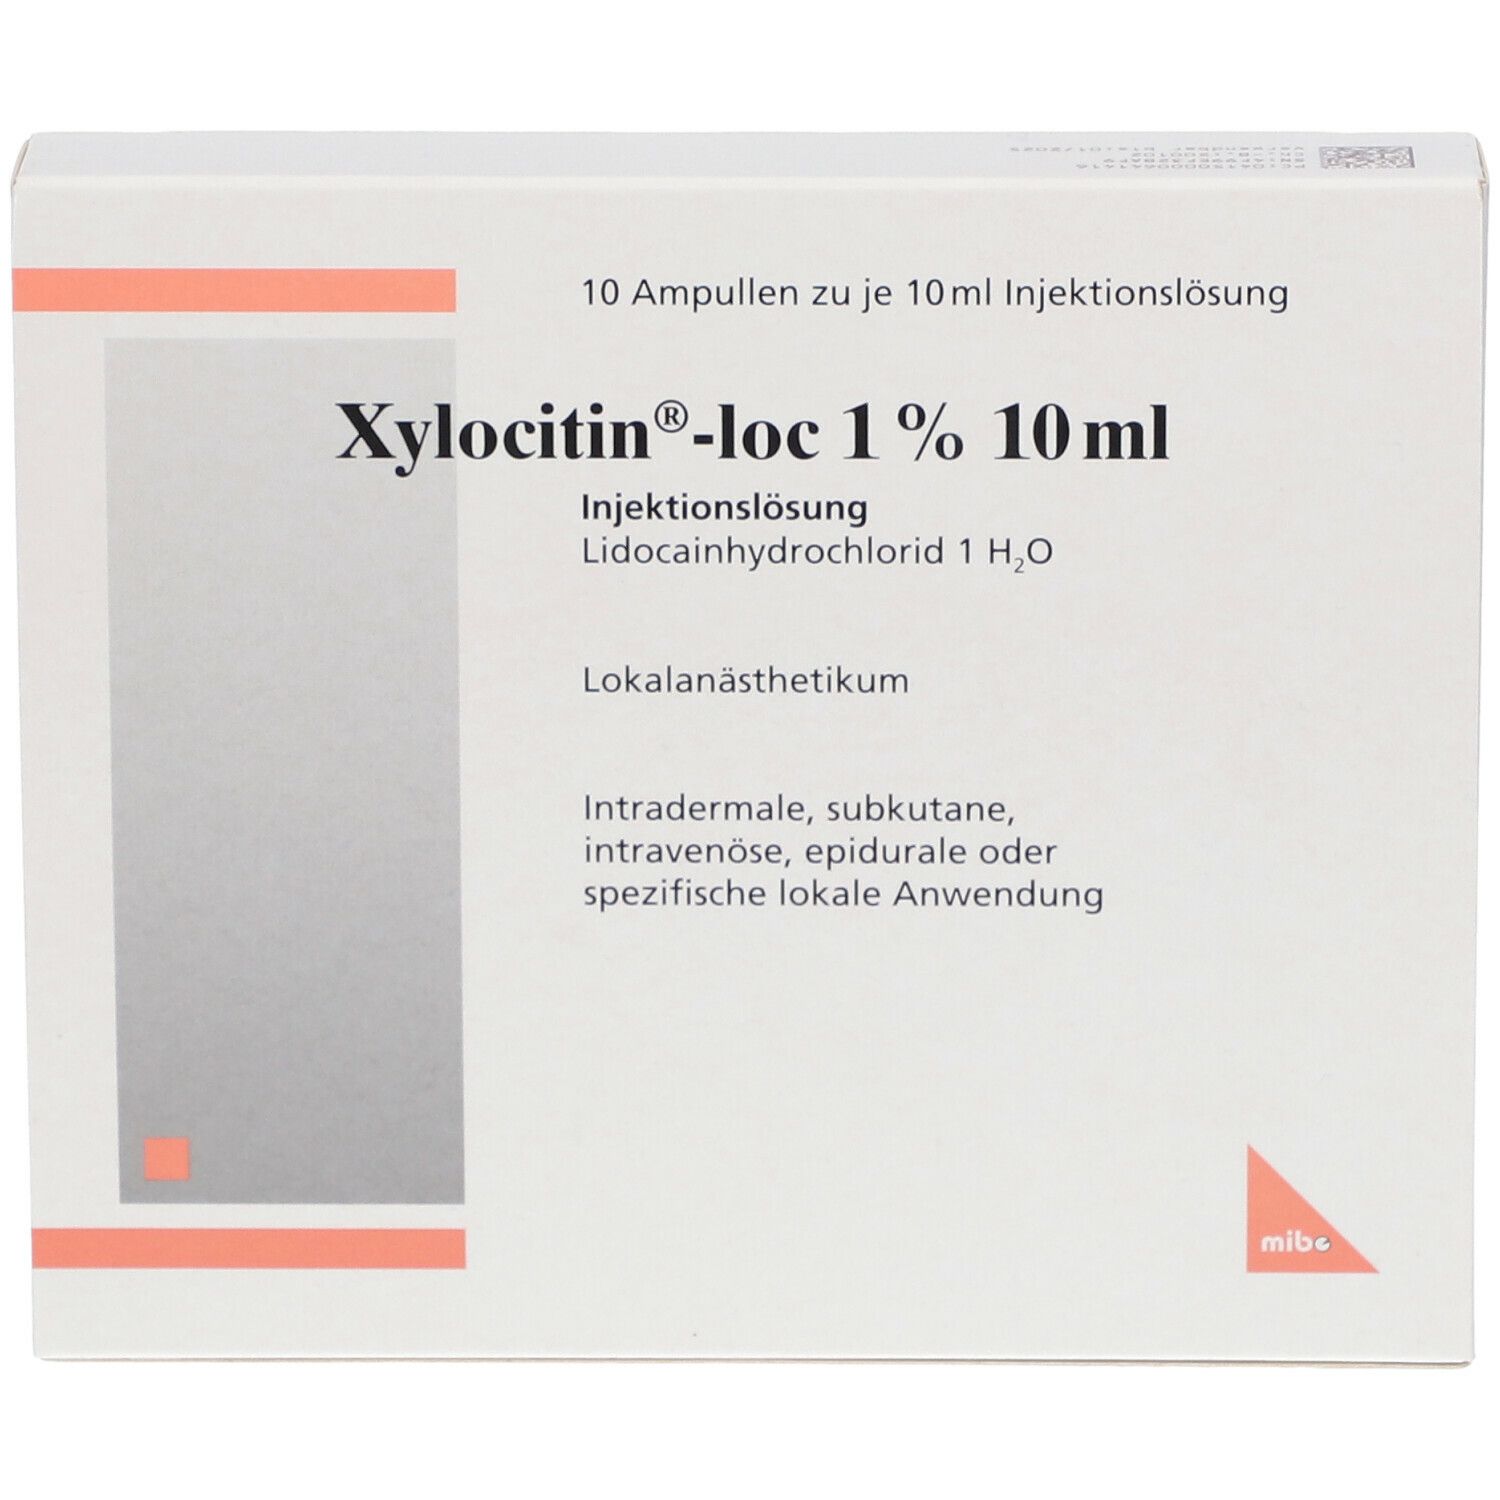 Xylocitin®-loc 1% 10 ml